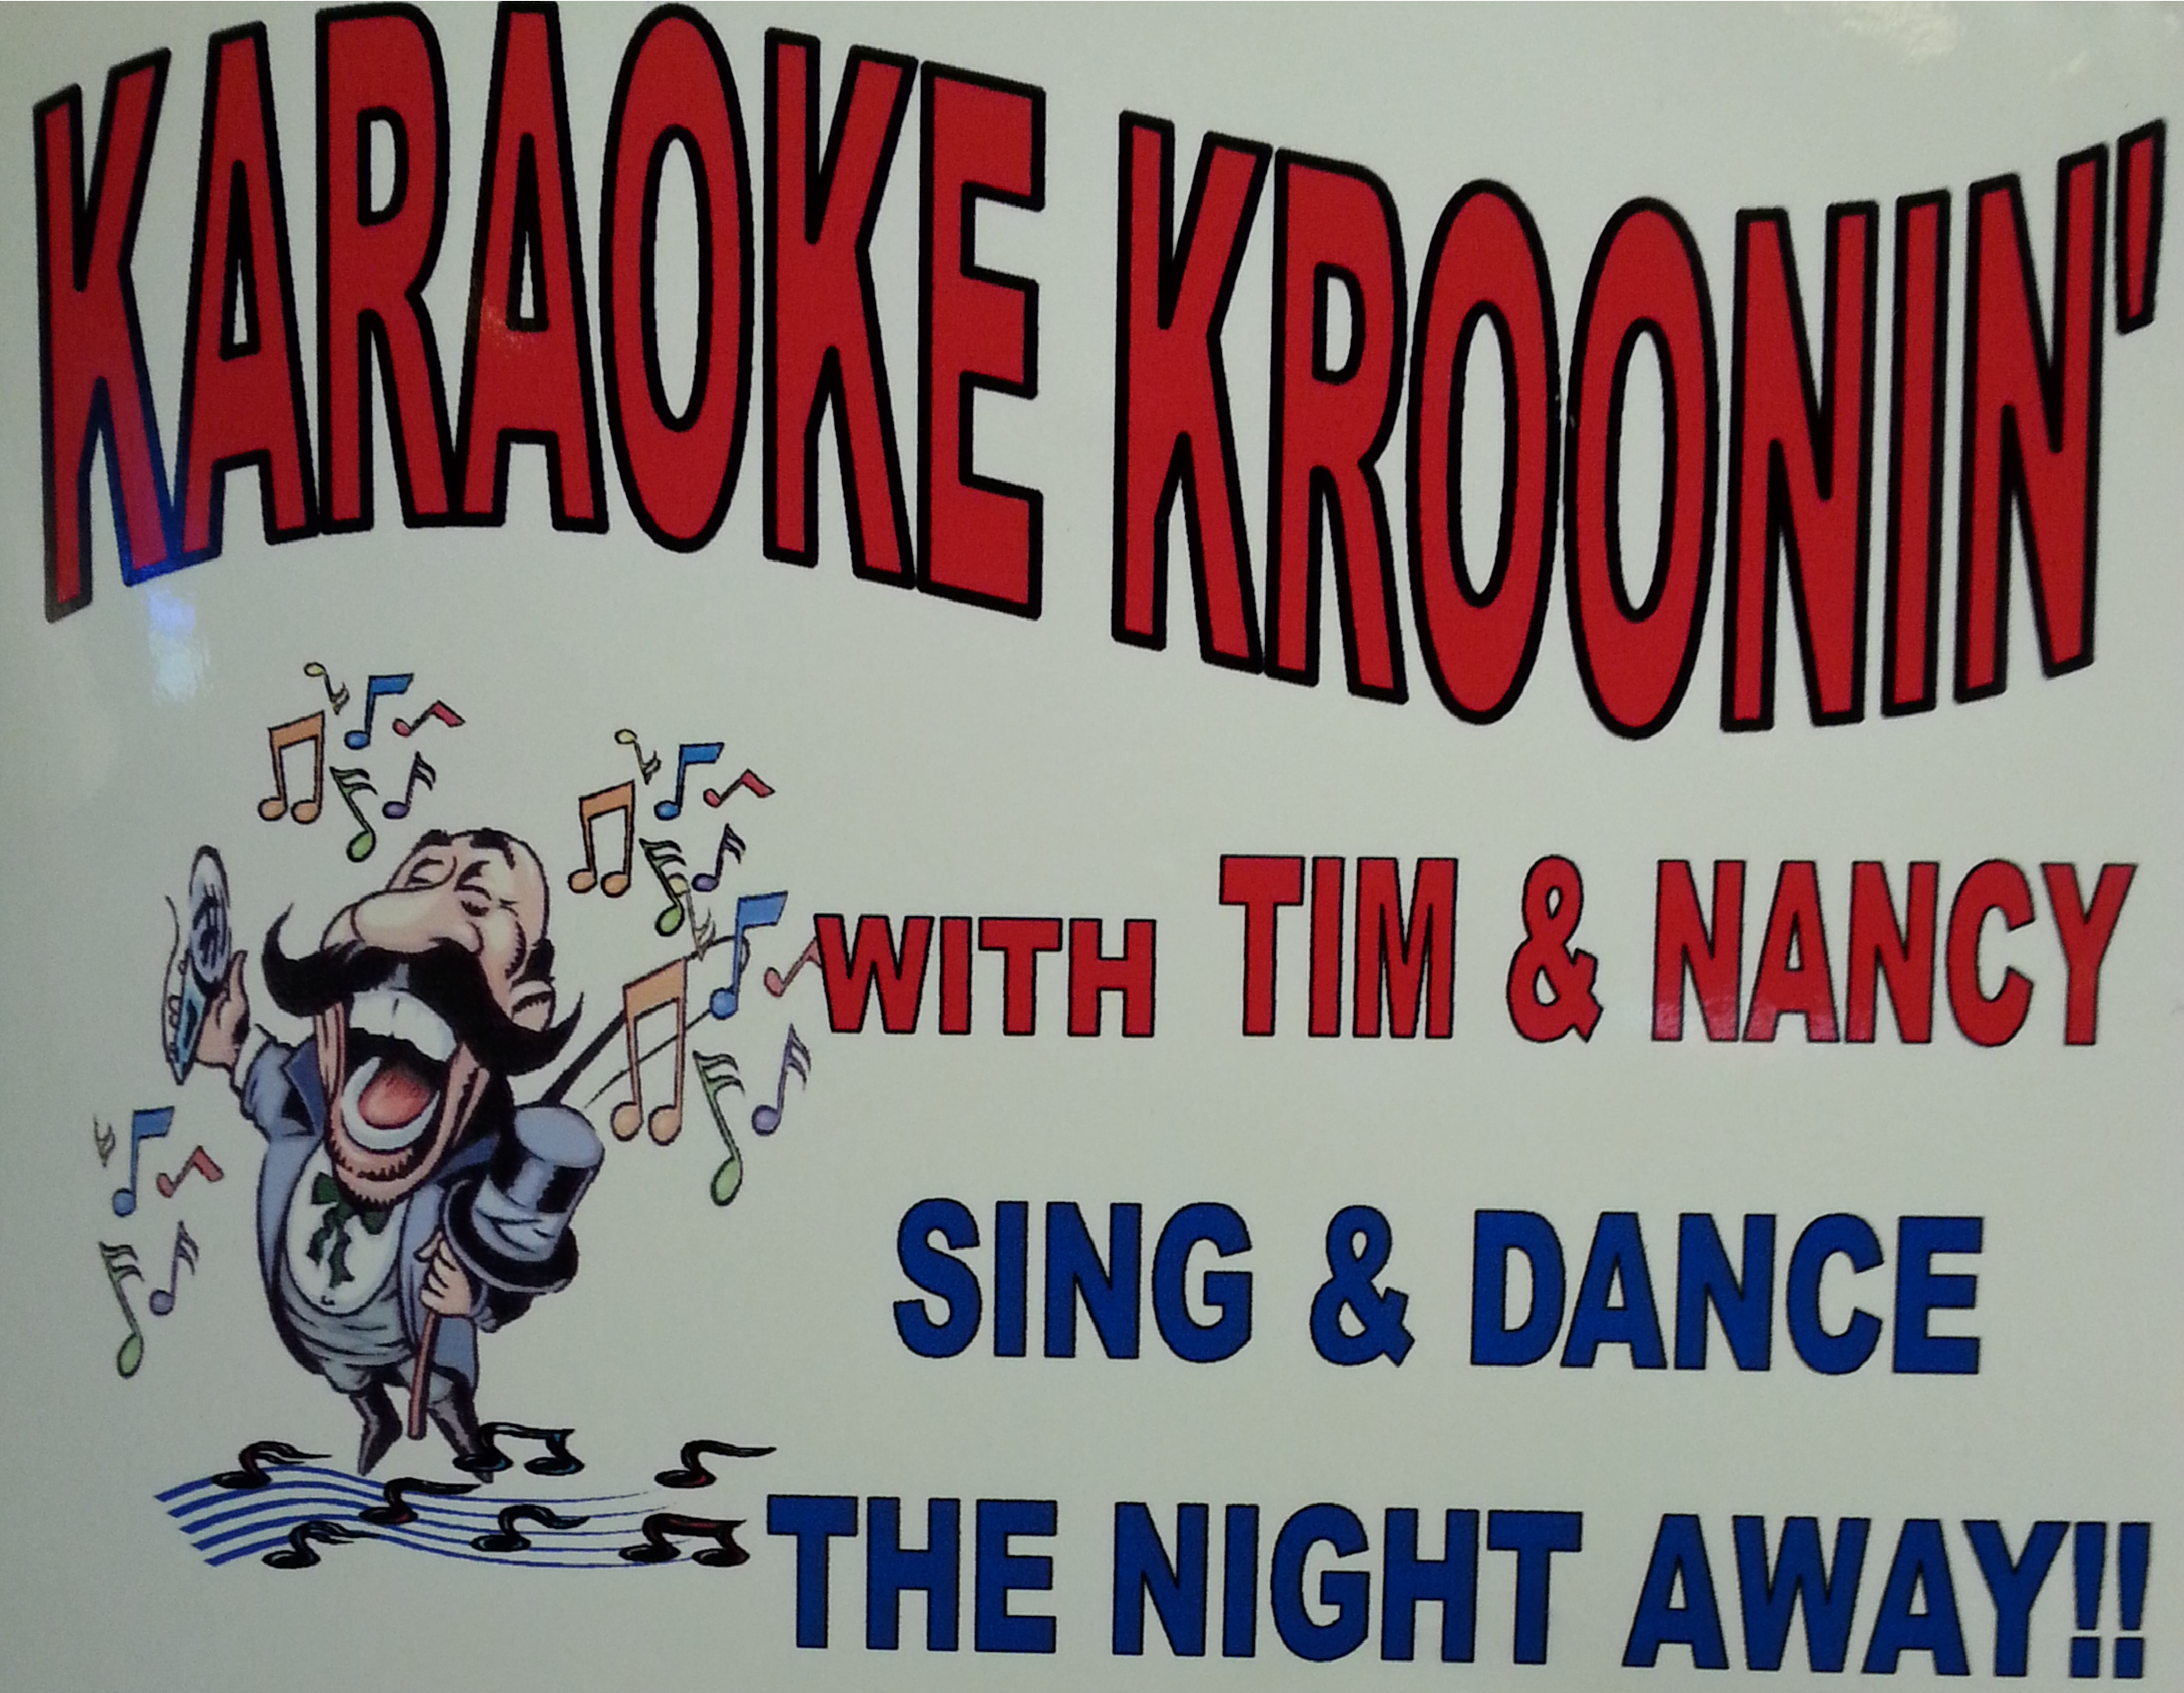 Friday - Karaoke Kroonin' 8 p.m.